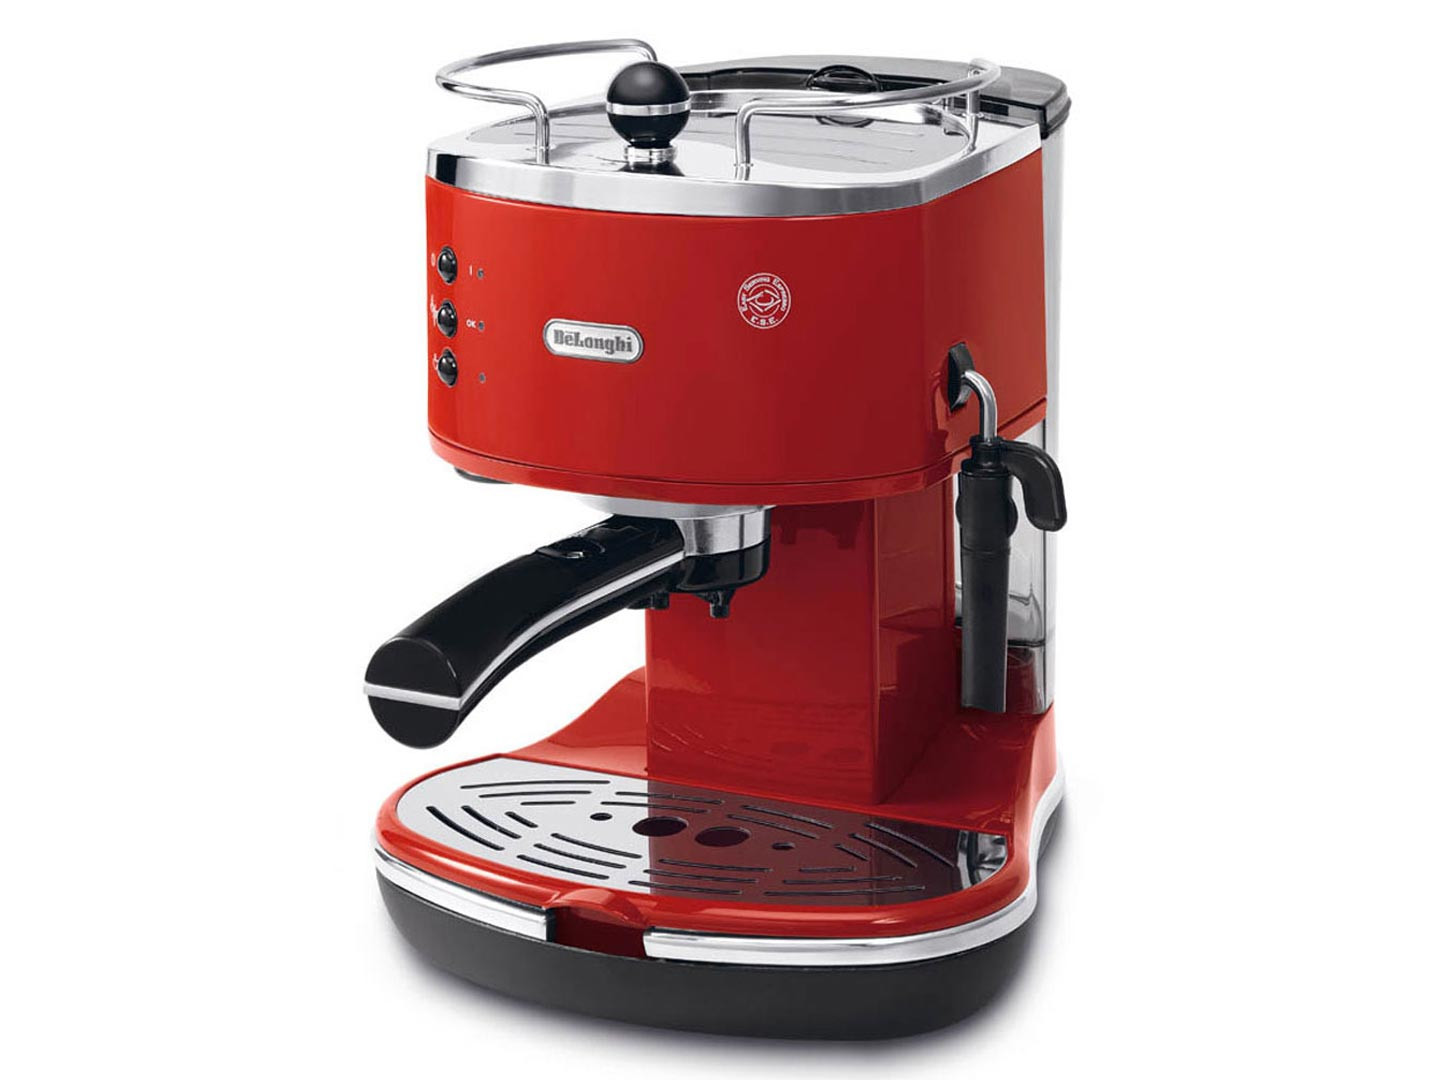 DeLonghi ECO 311.R Manuale Macchina per espresso 1,4 L, Macchine caffè in  Offerta su Stay On